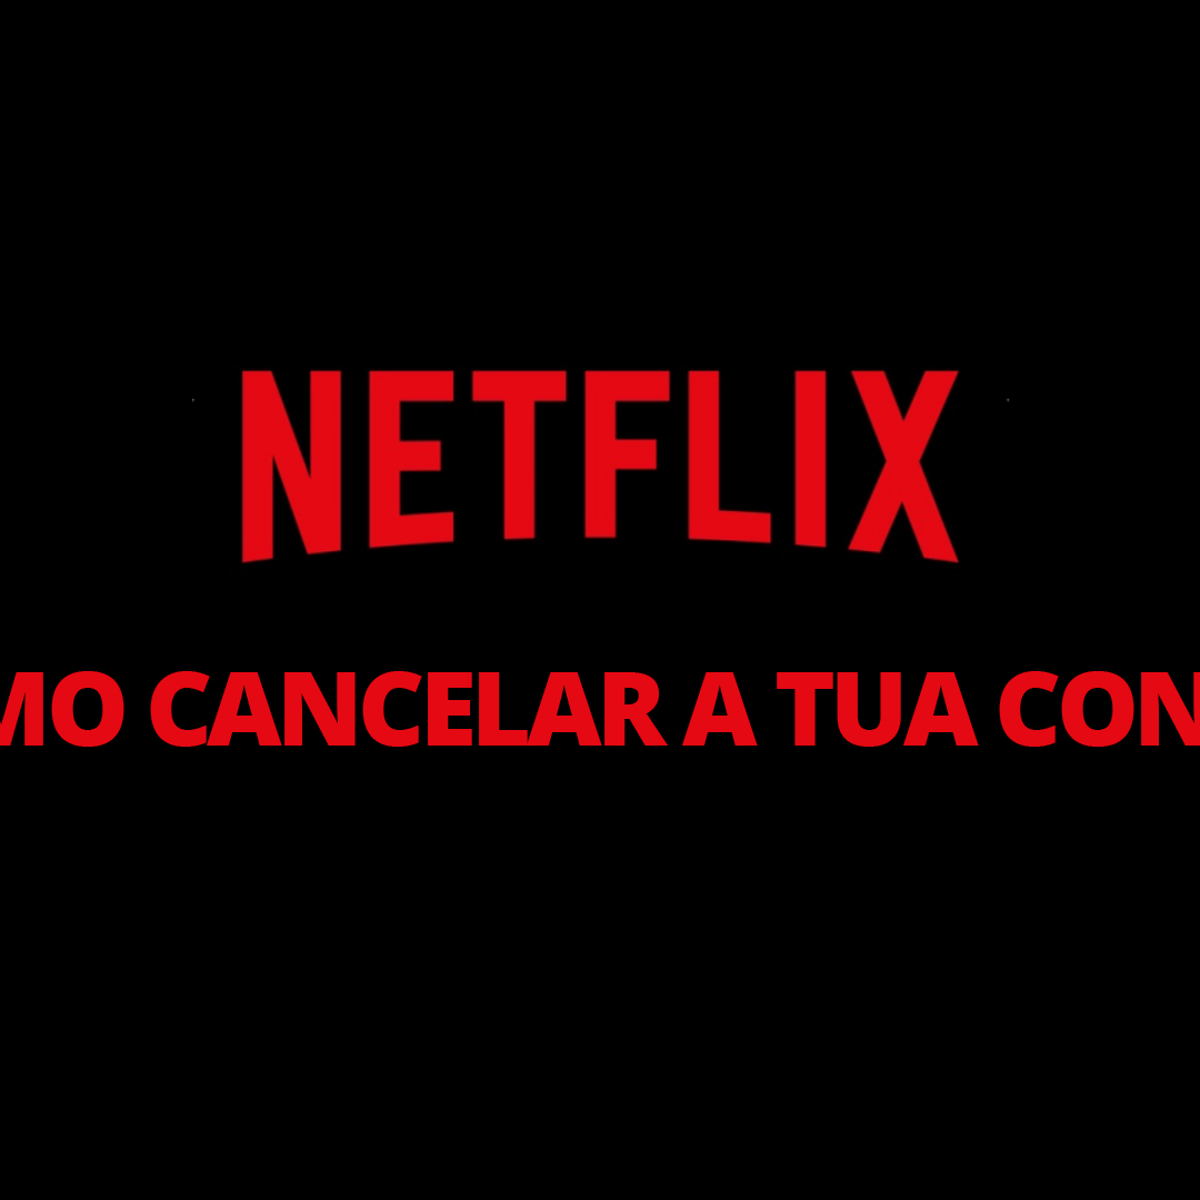 Como cancelar a tua conta na Netflix?